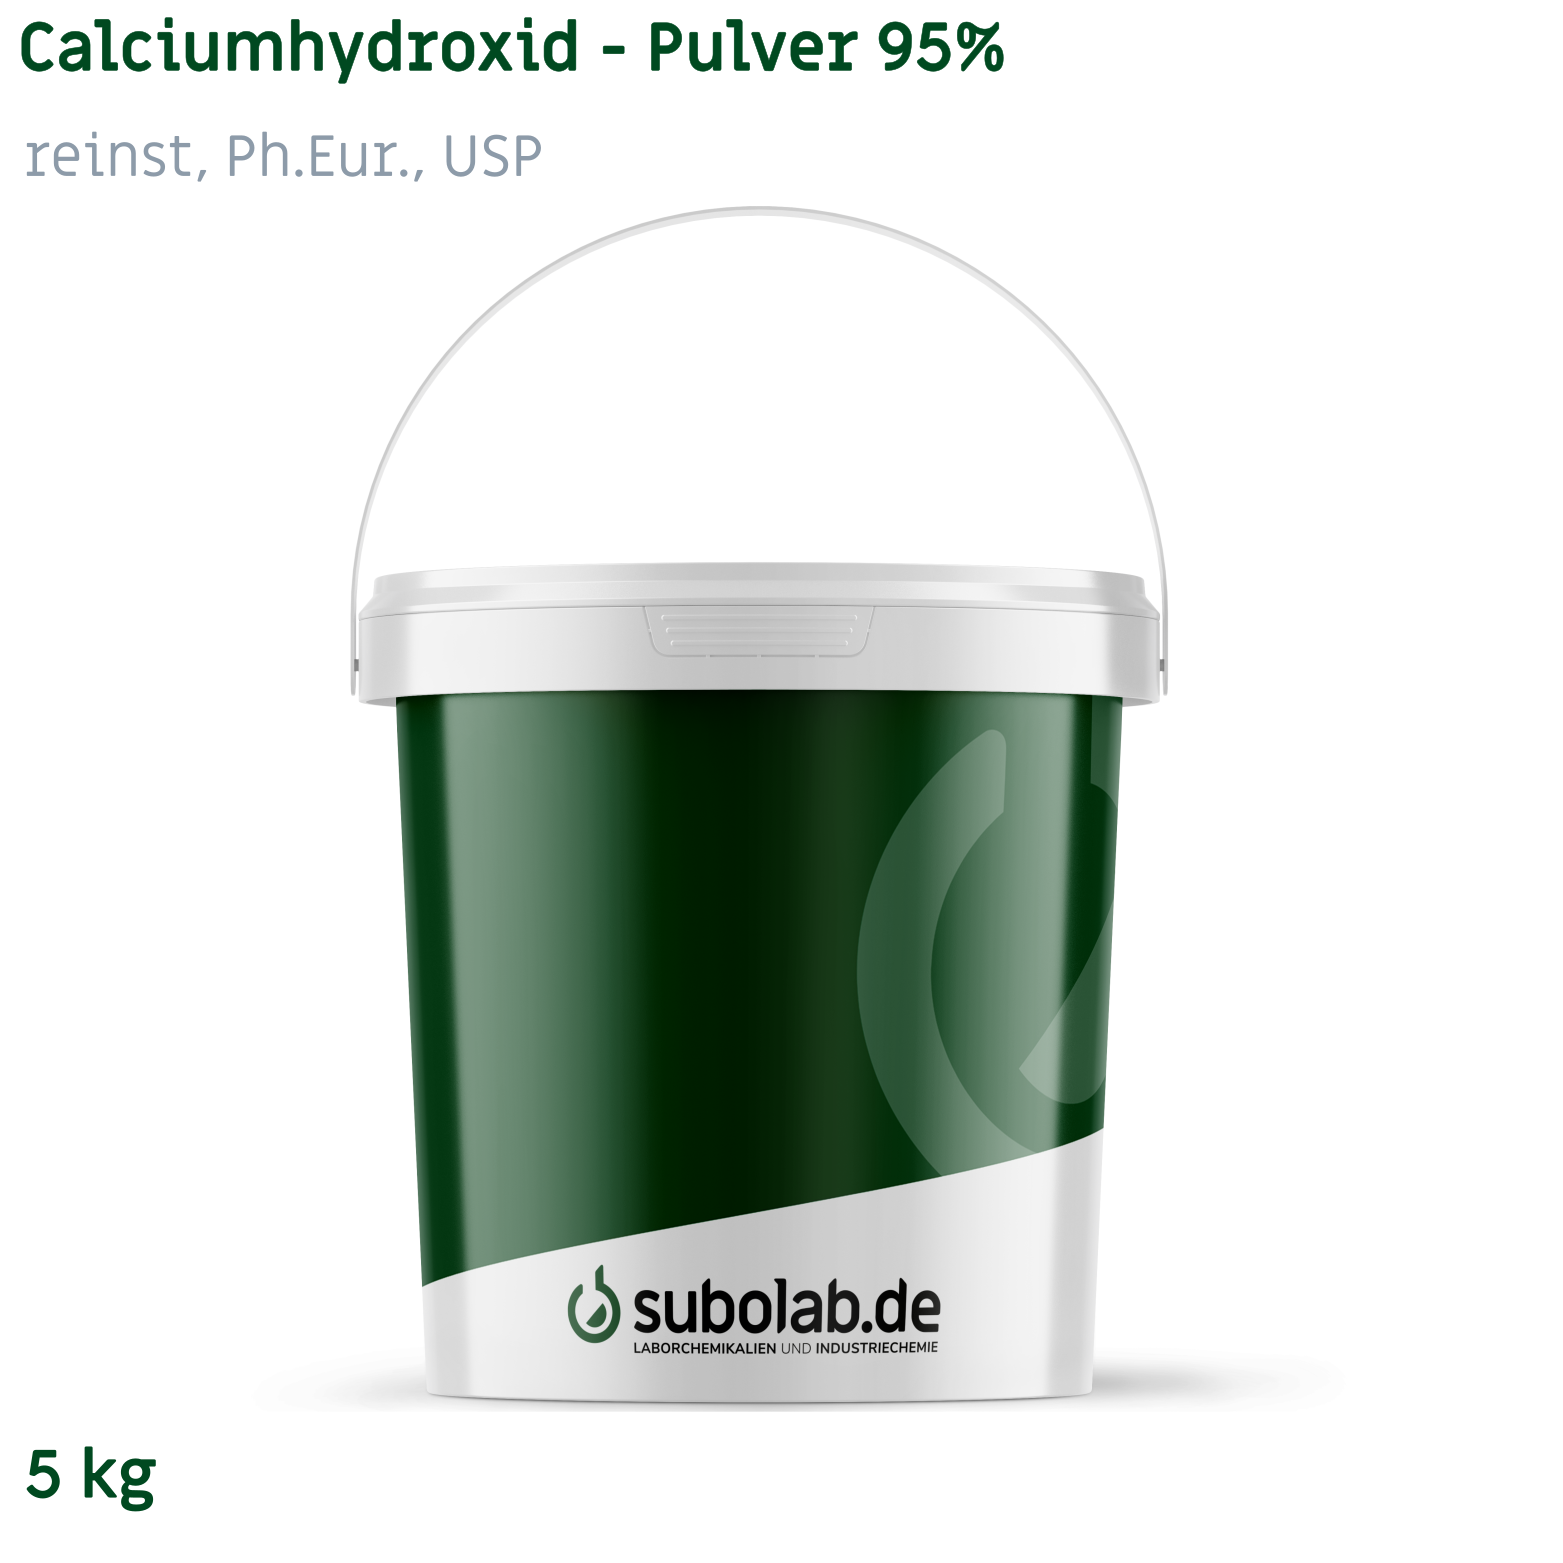 Bild von Calciumhydroxid - Pulver 95% reinst, Ph.Eur., USP (5 kg)